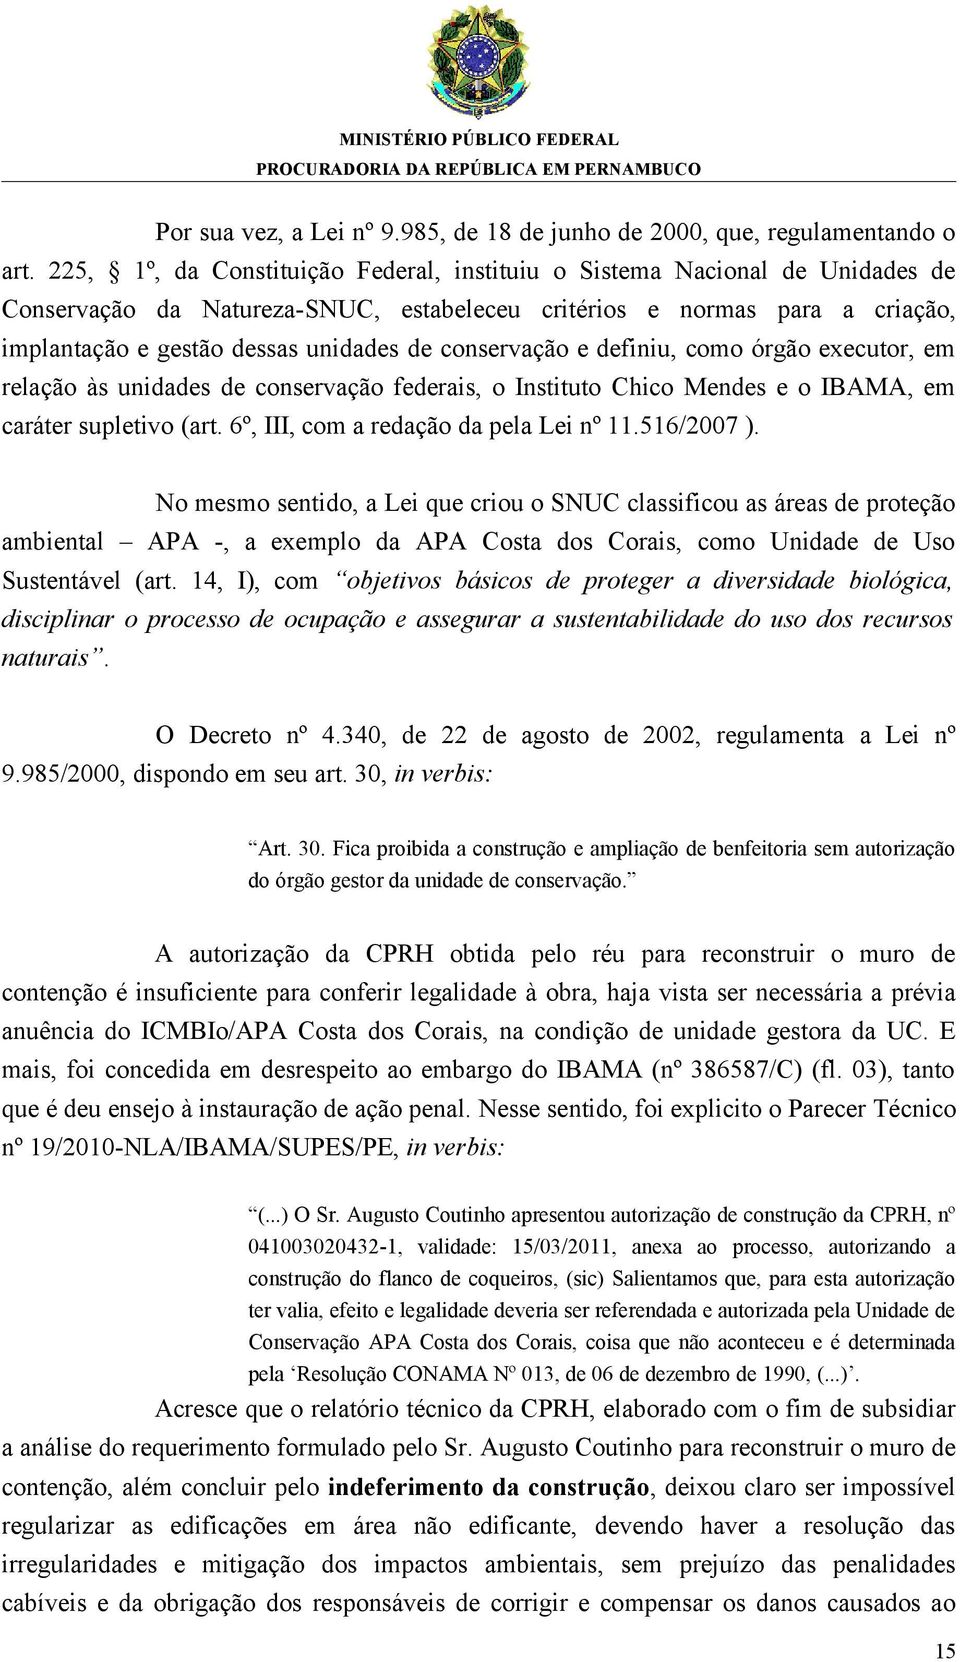 conservação e definiu, como órgão executor, em relação às unidades de conservação federais, o Instituto Chico Mendes e o IBAMA, em caráter supletivo (art. 6º, III, com a redação da pela Lei nº 11.